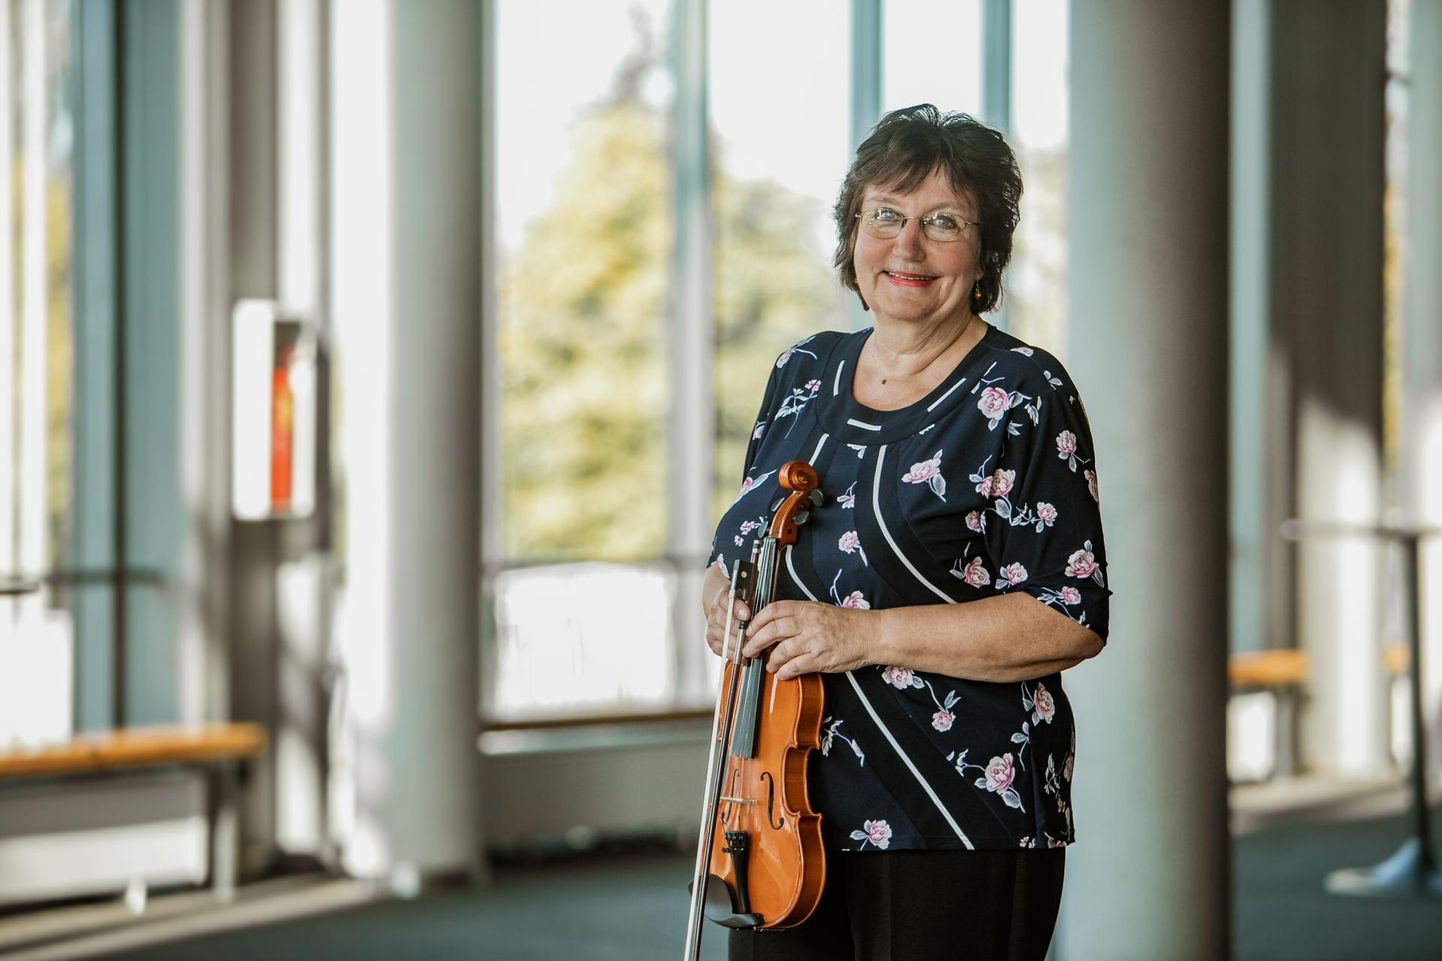 Viiuliõpetaja Maire Varma alustas Pärnu muusikakoolis tööd aastal 1976. Kümned tema kasvandikud on praegu professionaalsed muusikud, õpetajad ja kolleegid.